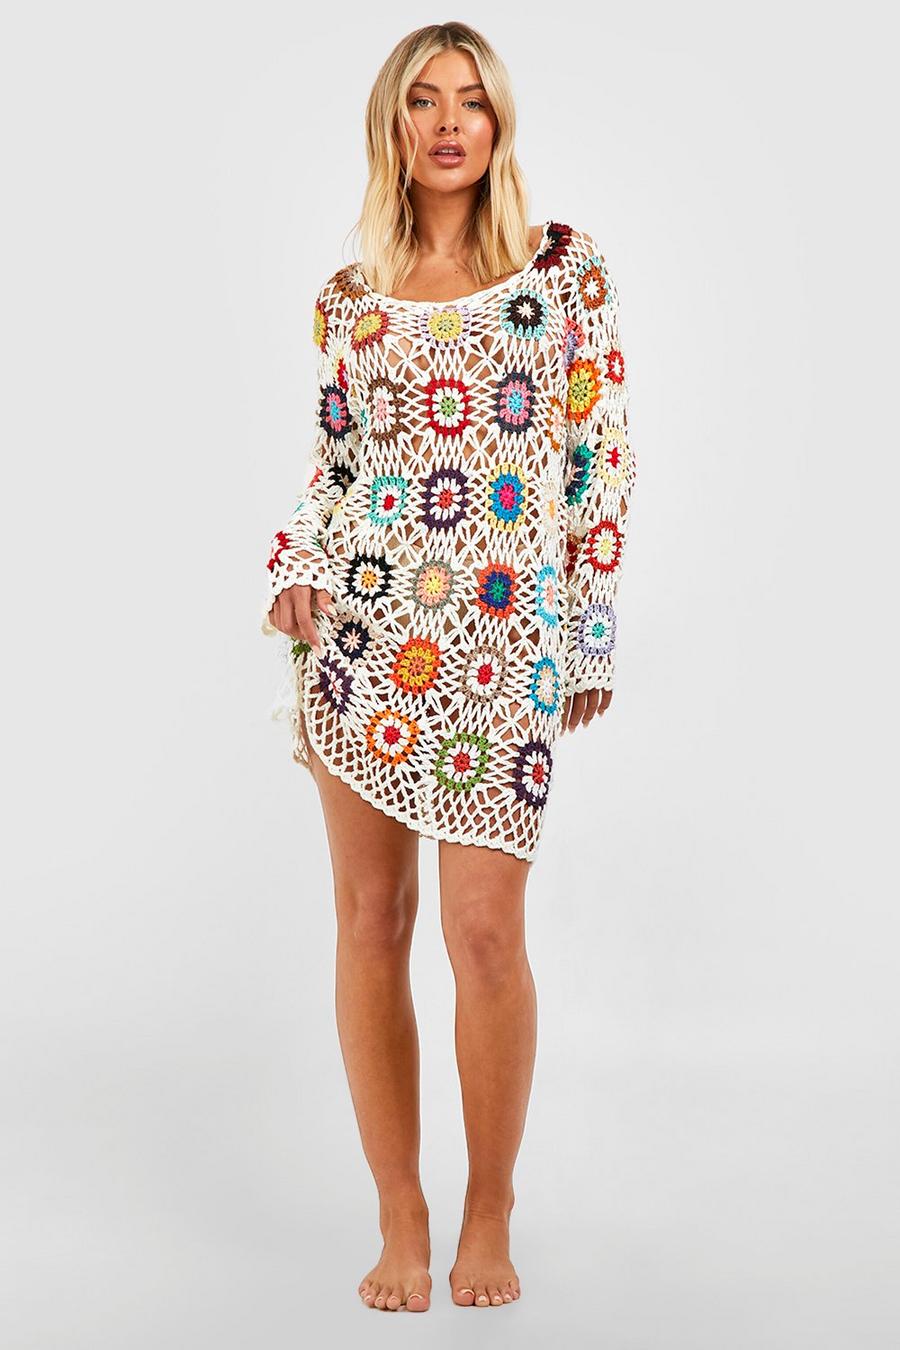 Cream Crochet Patchwork Cover Up Beach Dress